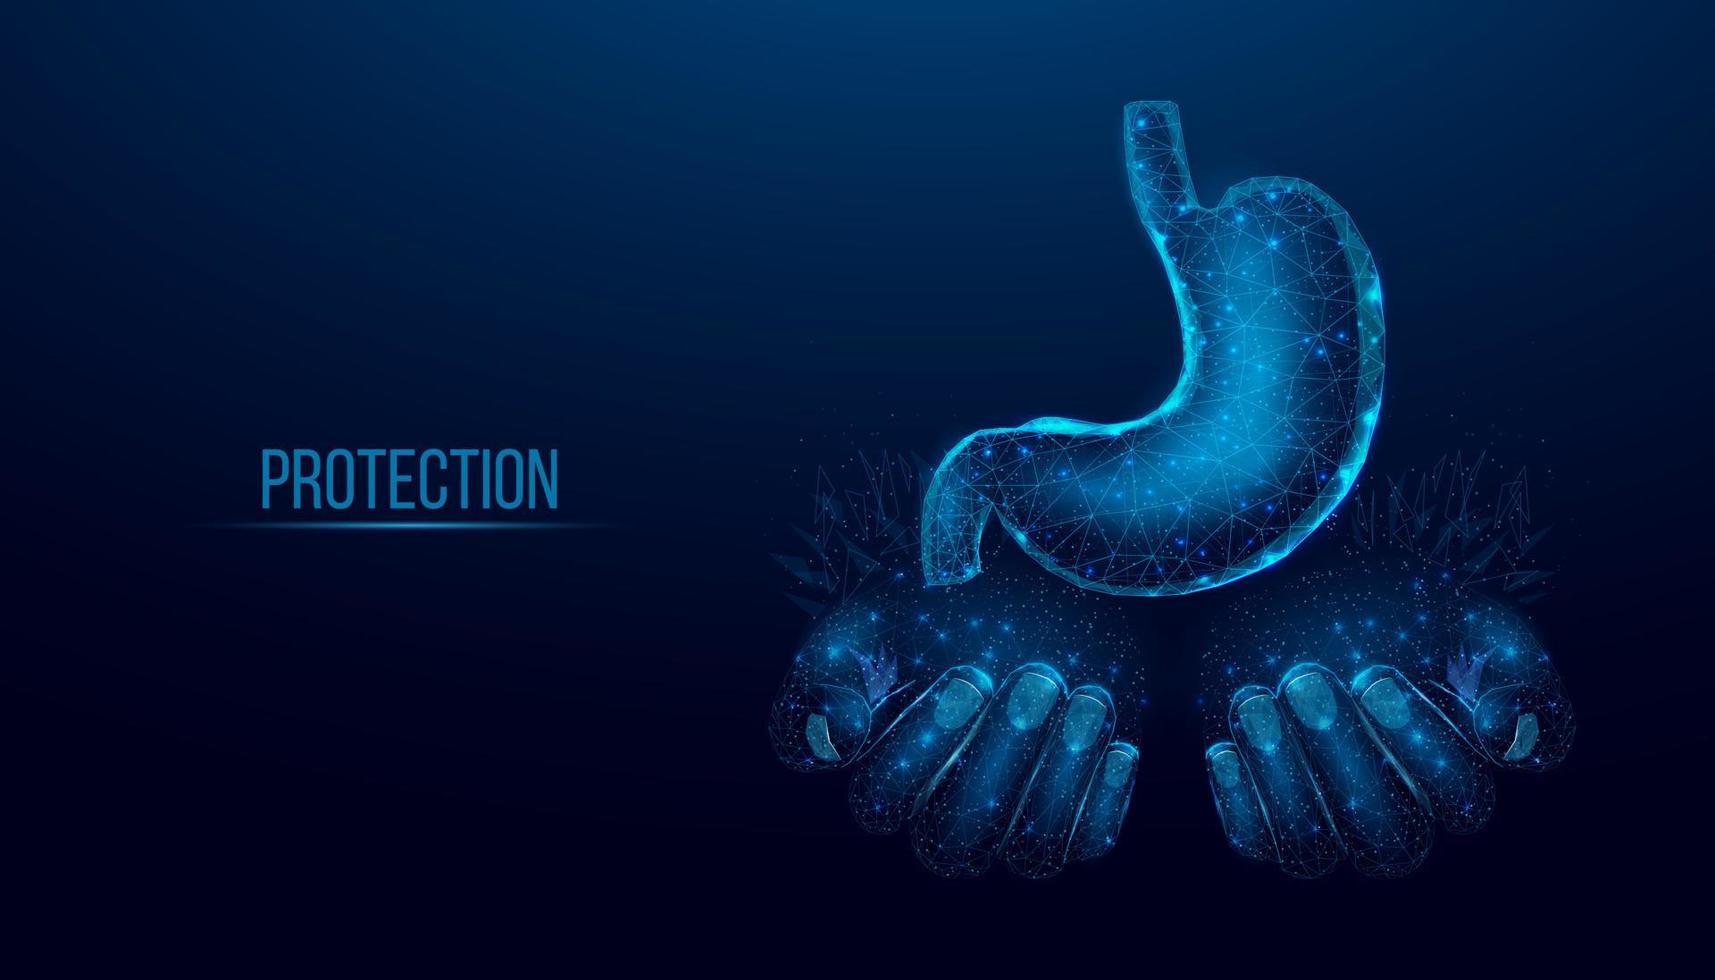 deux mains humaines tiennent l'estomac humain. concept médical, traitement du système digestif. illustration vectorielle 3d moderne abstraite sur fond bleu foncé. vecteur